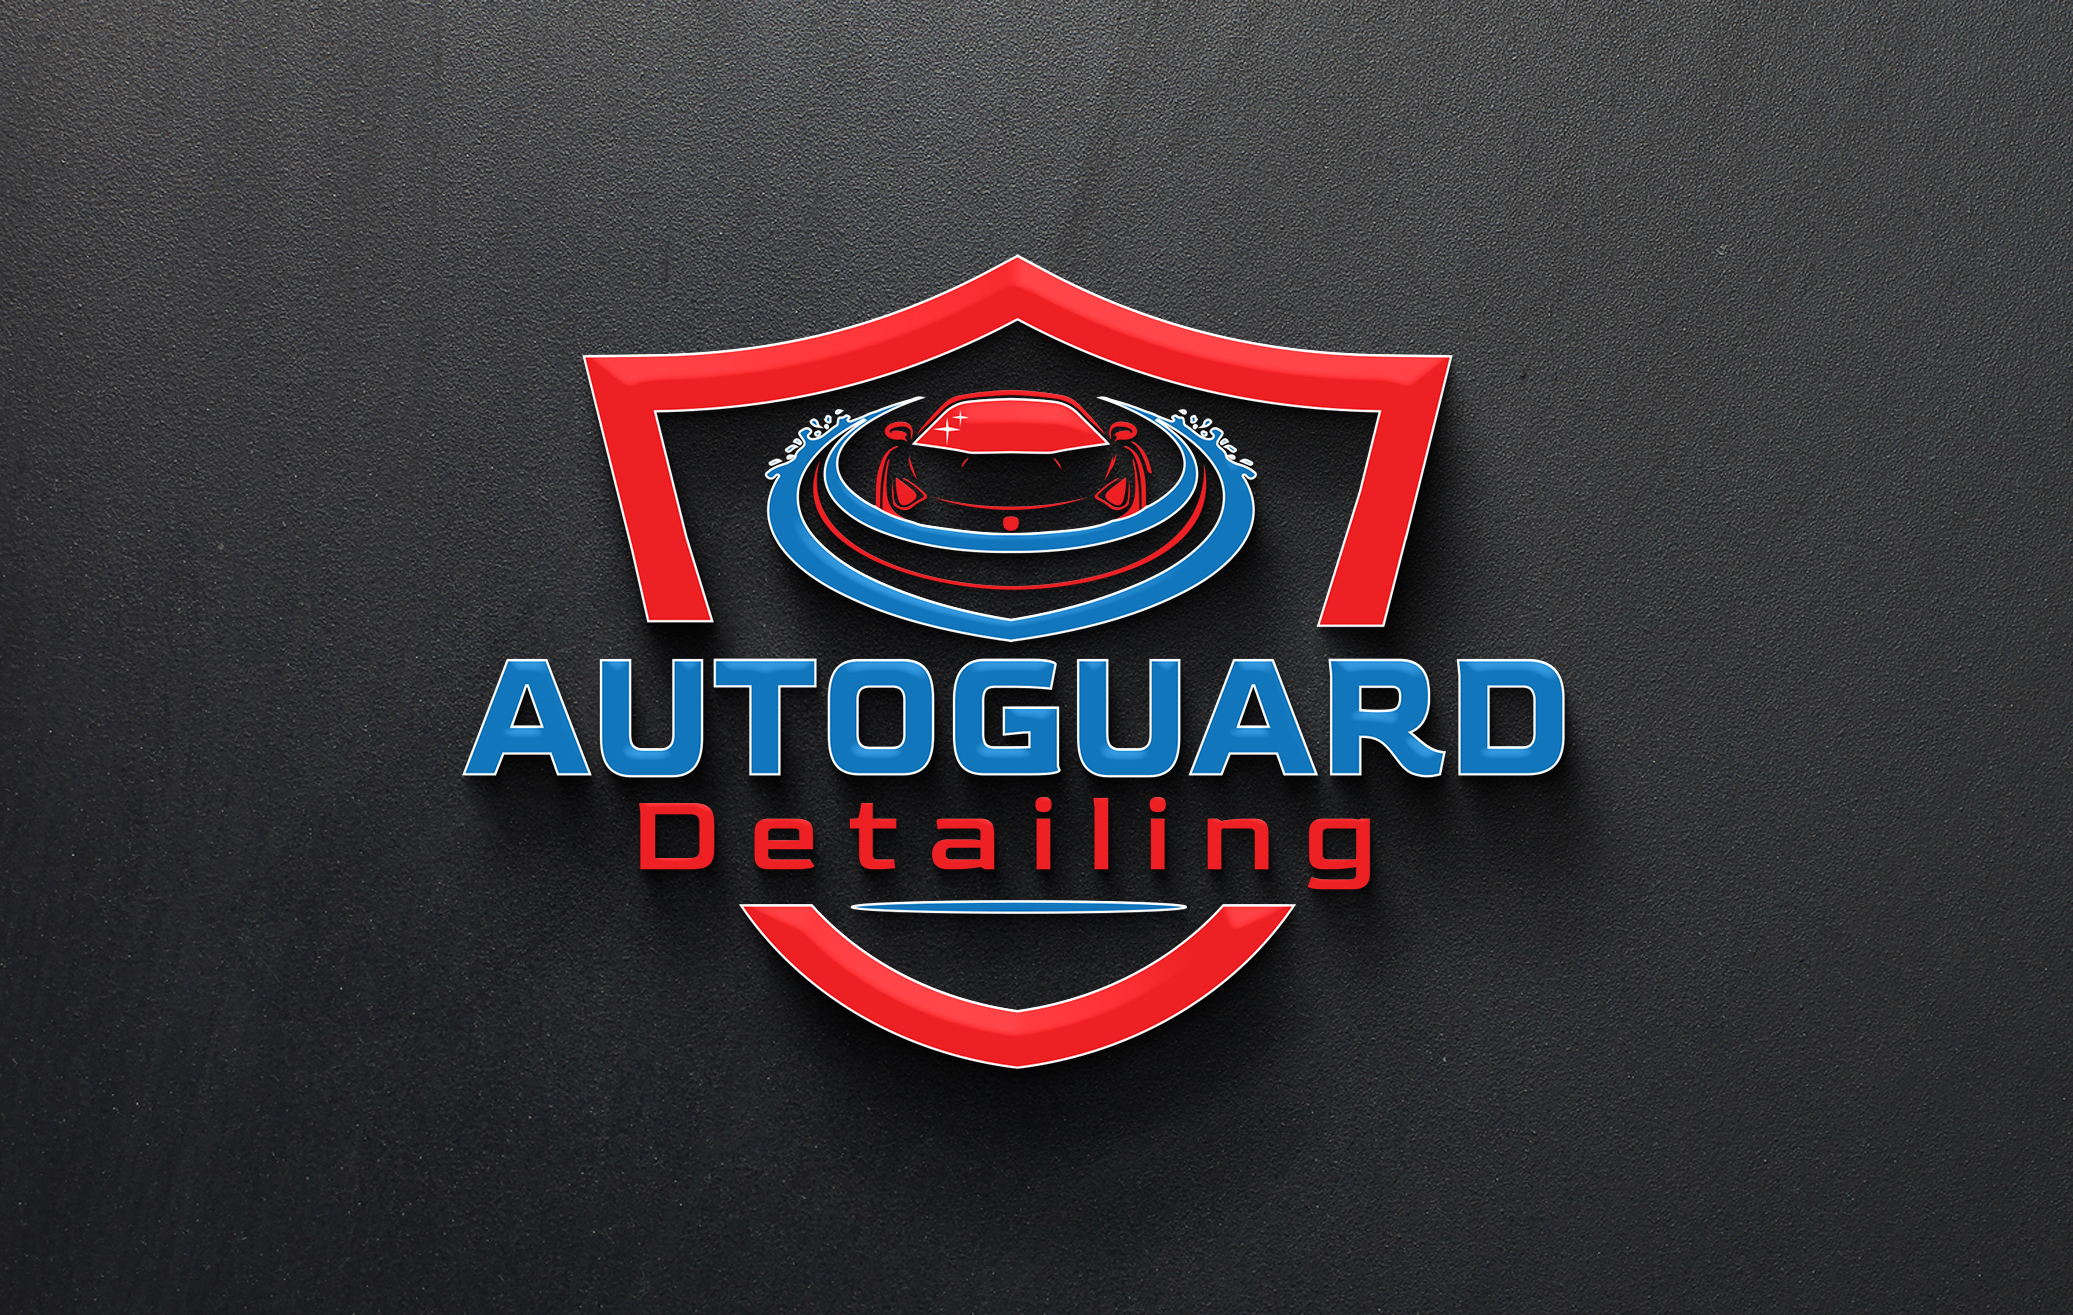 autoguard detailing